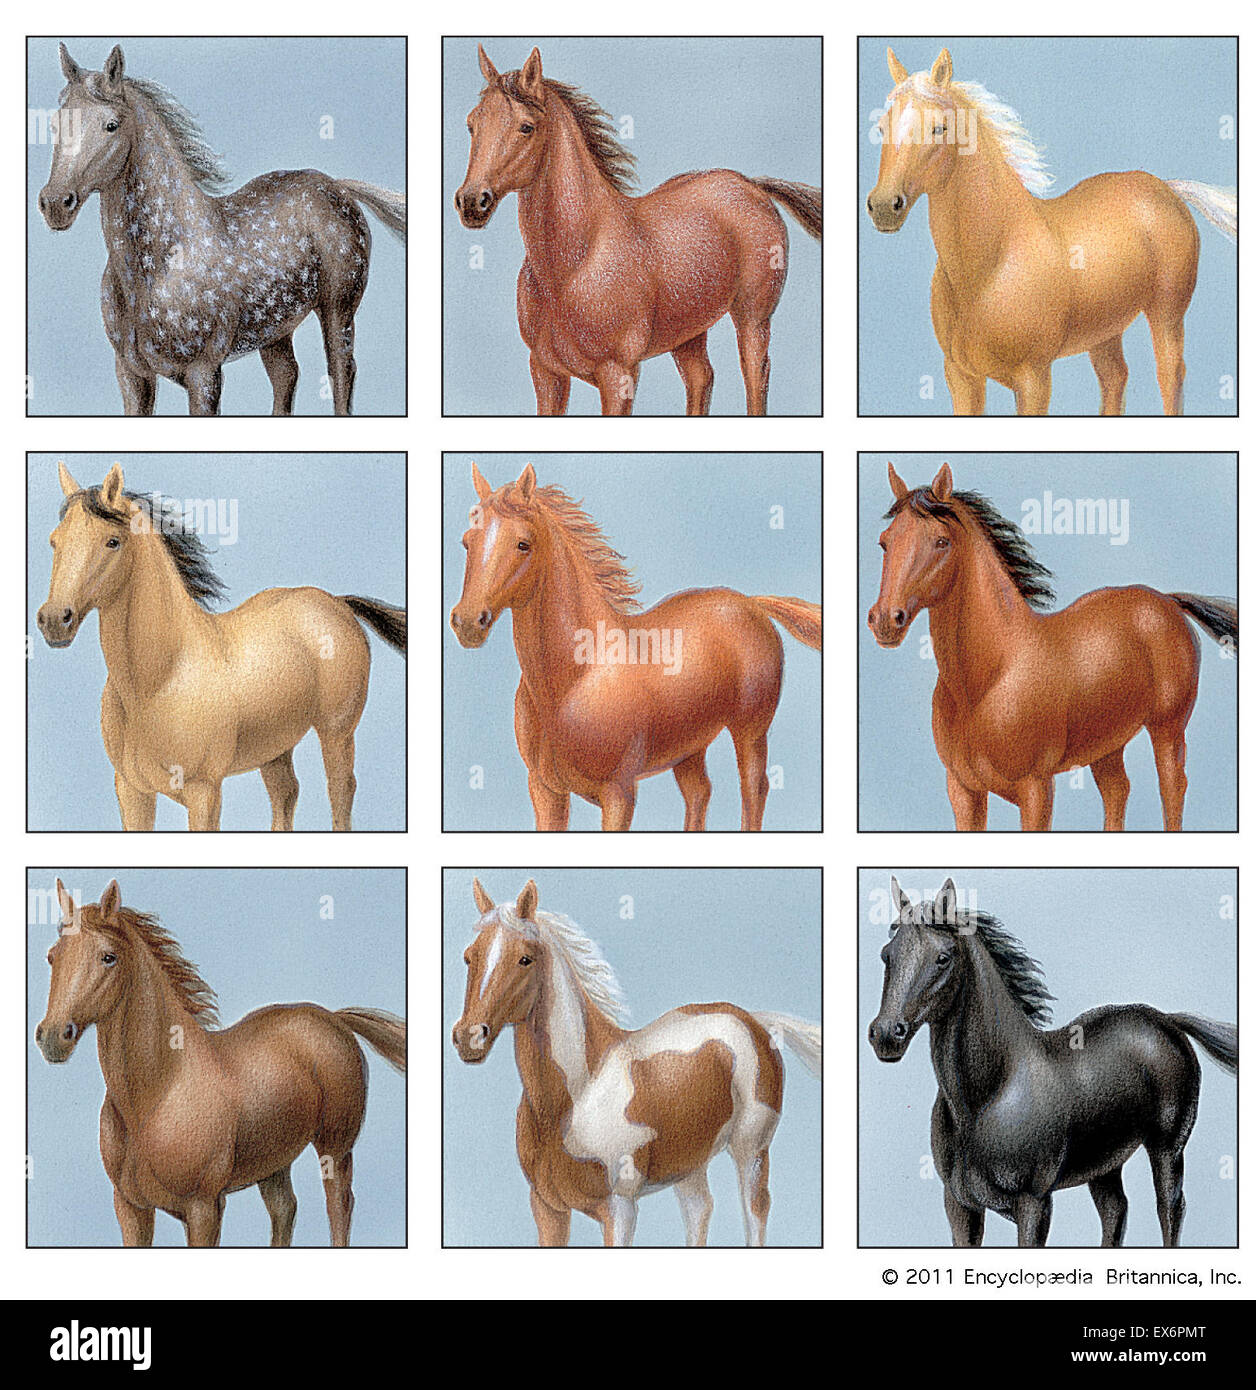 Pferdefarben -Fotos und -Bildmaterial in hoher Auflösung – Alamy